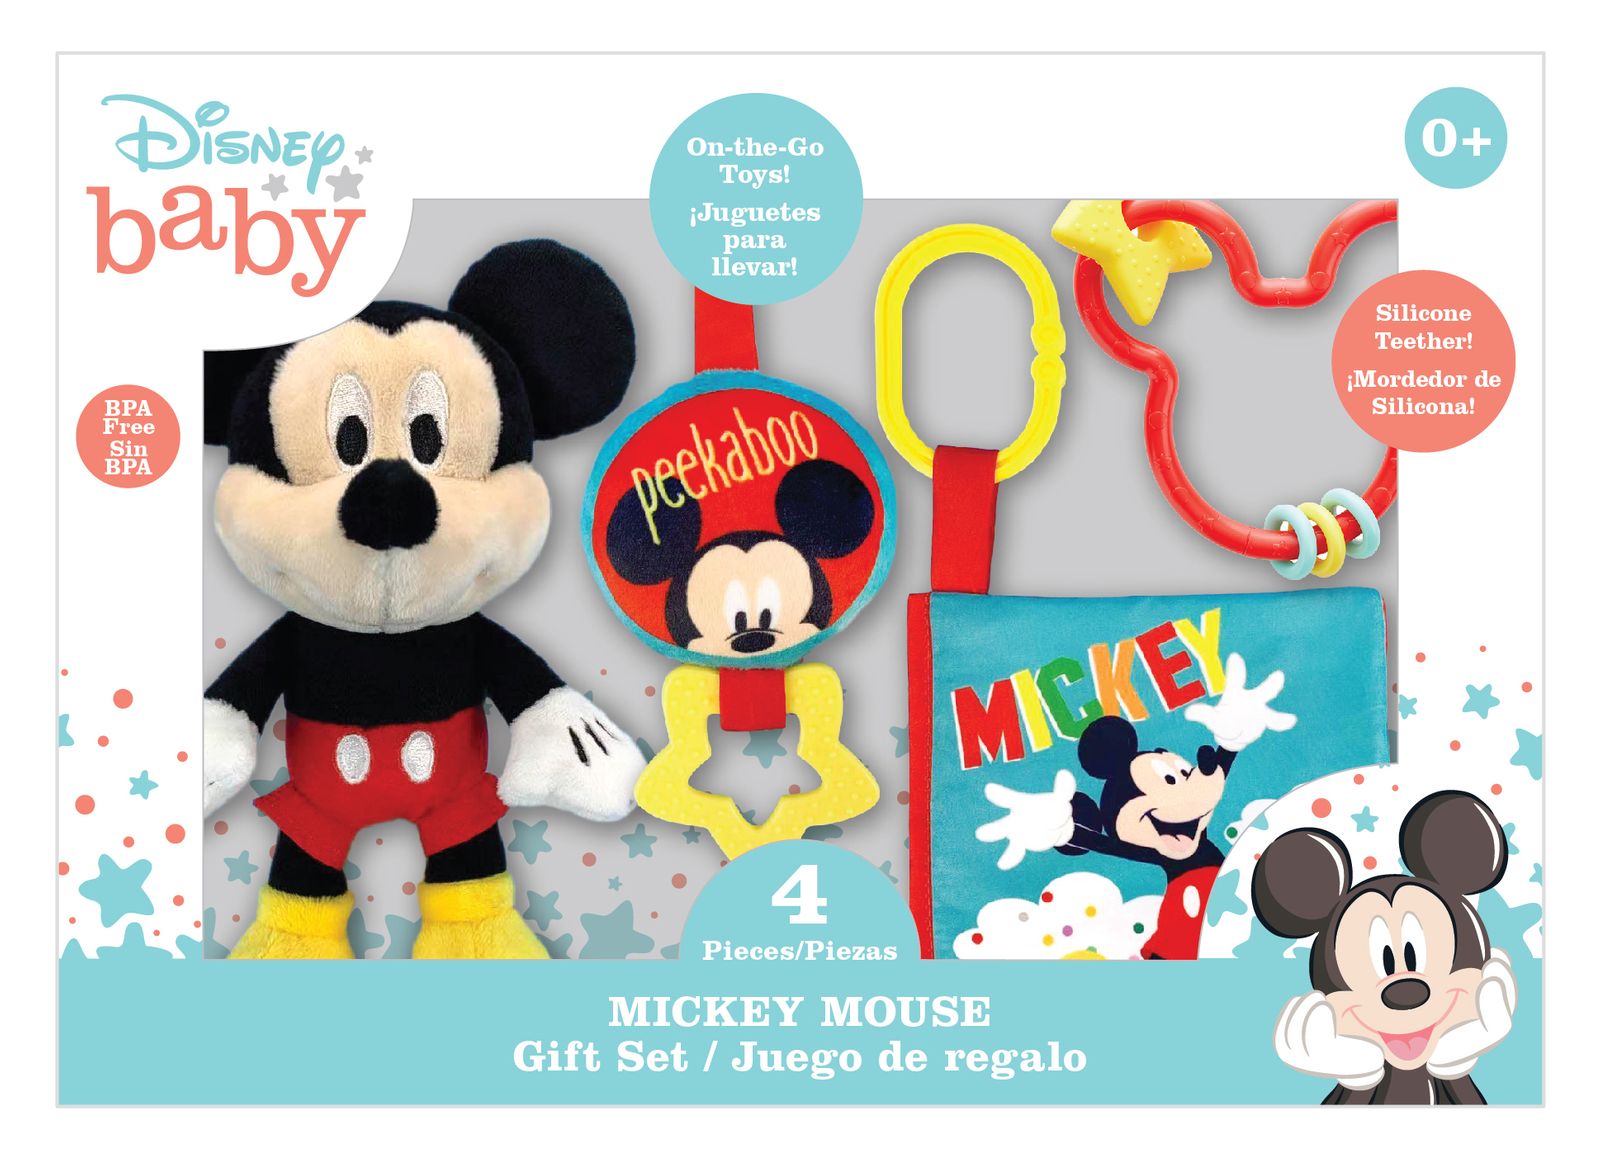 高級素材使用ブランド 送料無料 ディズニー ミッキーマウス ギフト4点セット 海外通販 Disney 4 Piece Mickey Mouse Gift Set Qdtek Vn